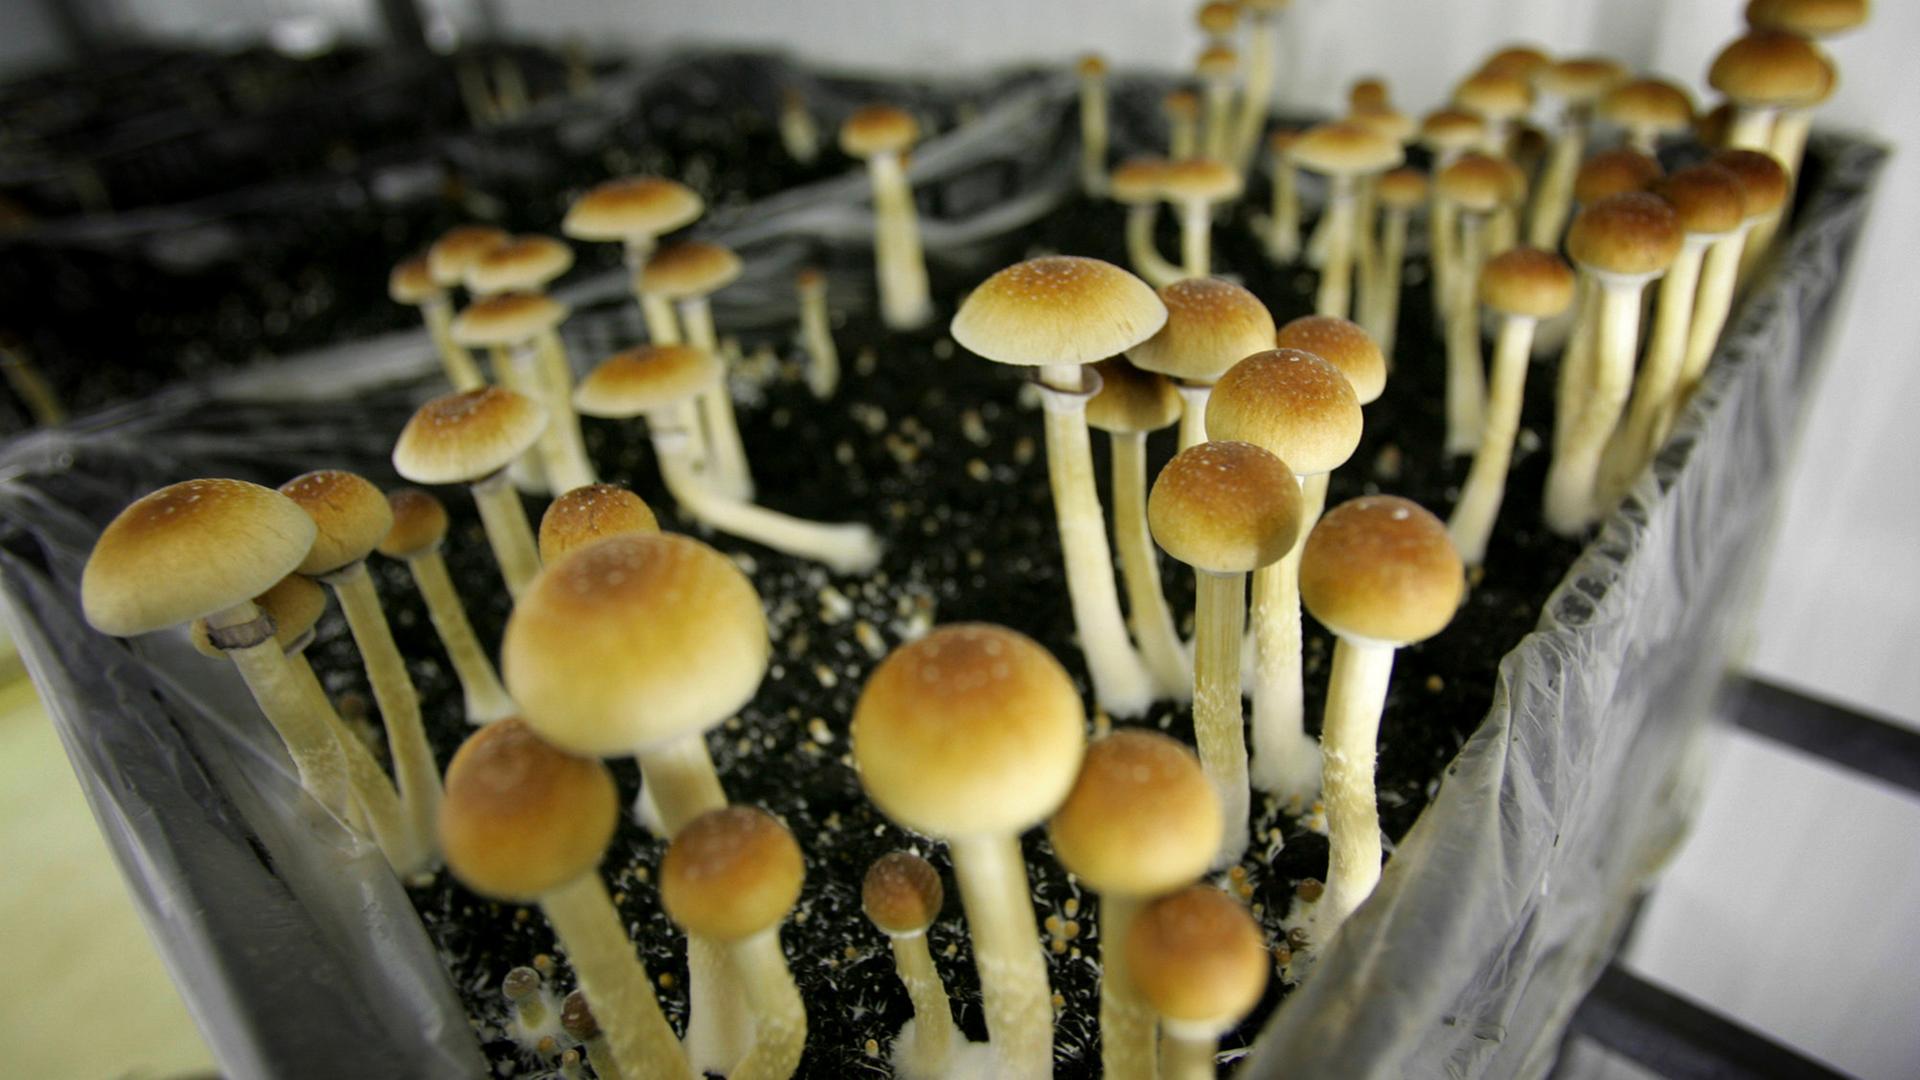 Anbau von Magic Mushrooms, aufgenommen am 02.08.2007 in Amsterdam (Niederlande)